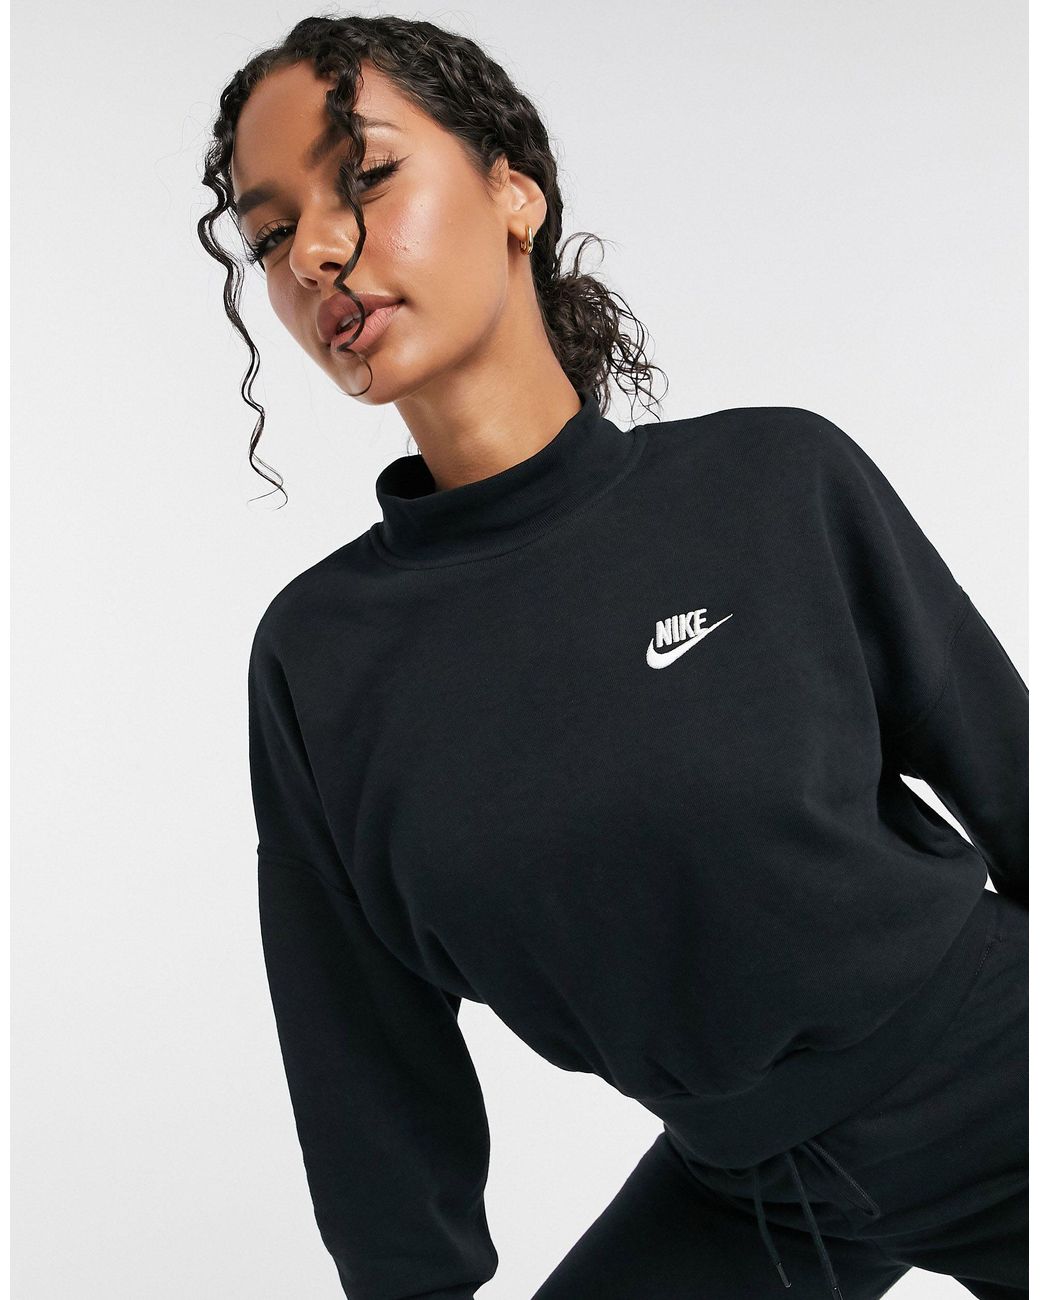 Nike Essentials Cropped Mock Neck Sweatshirt in Black | Lyst Canada